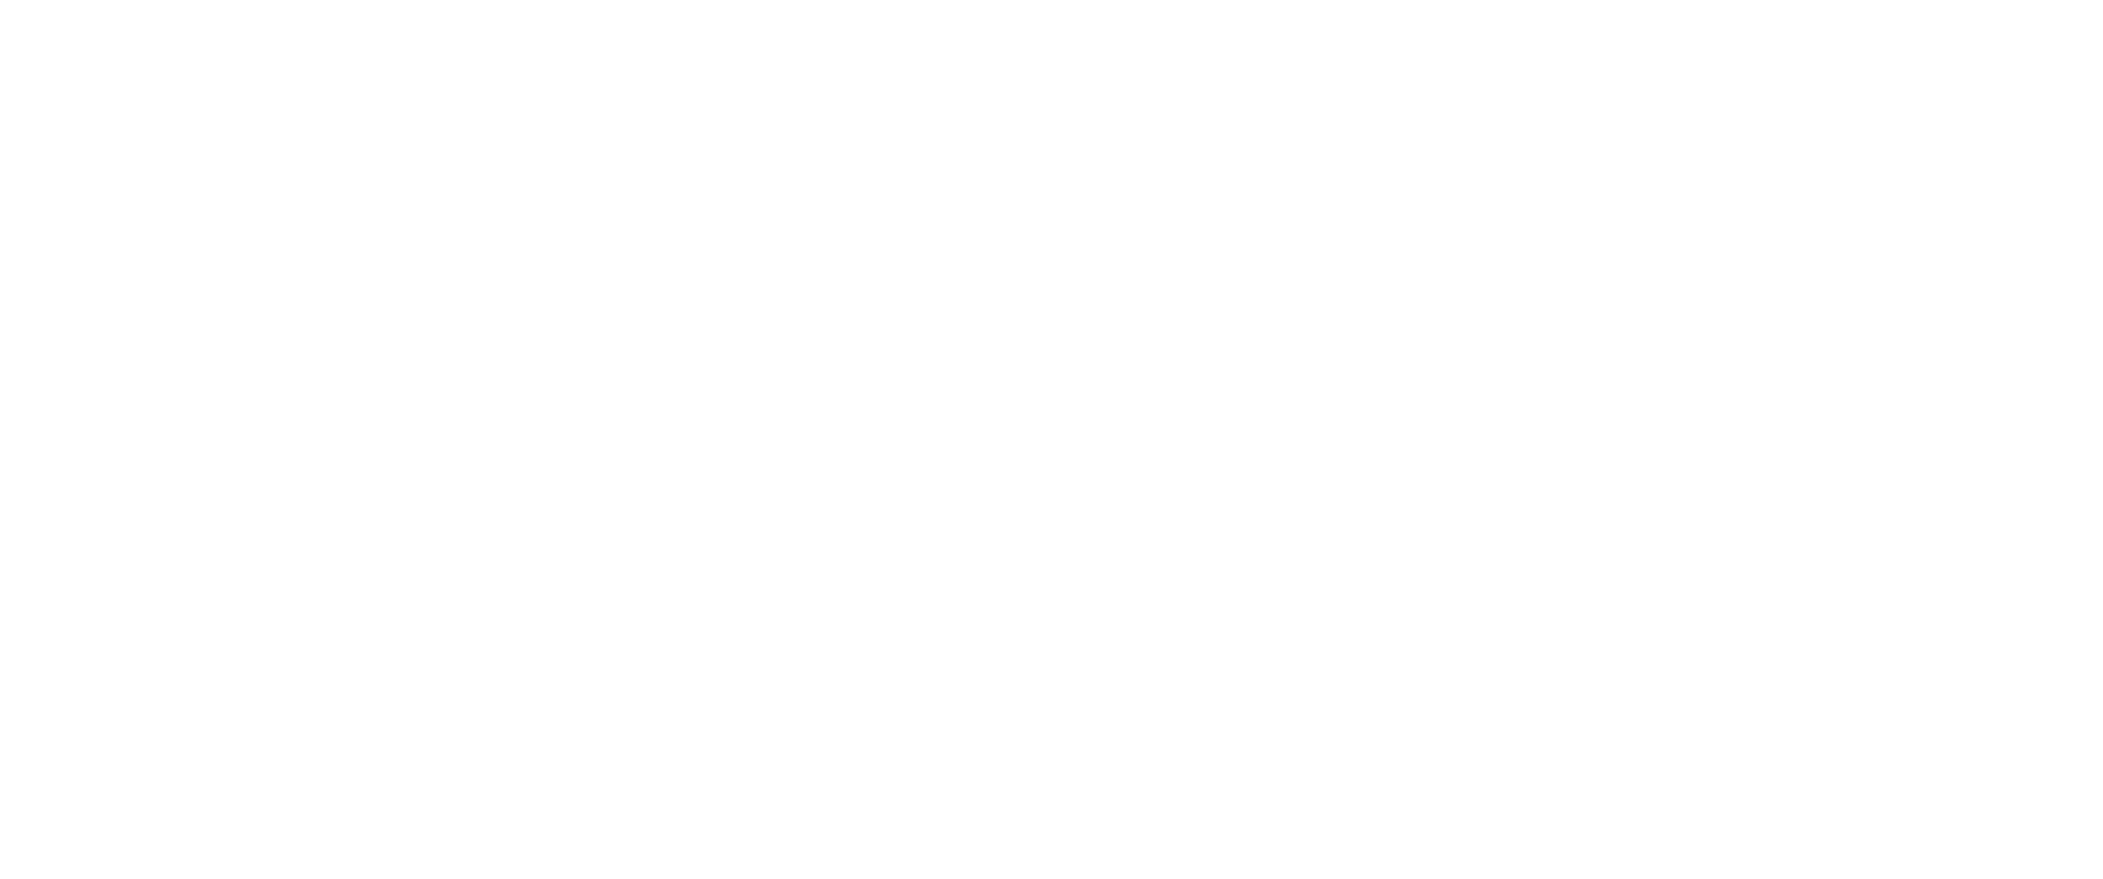 V7concept